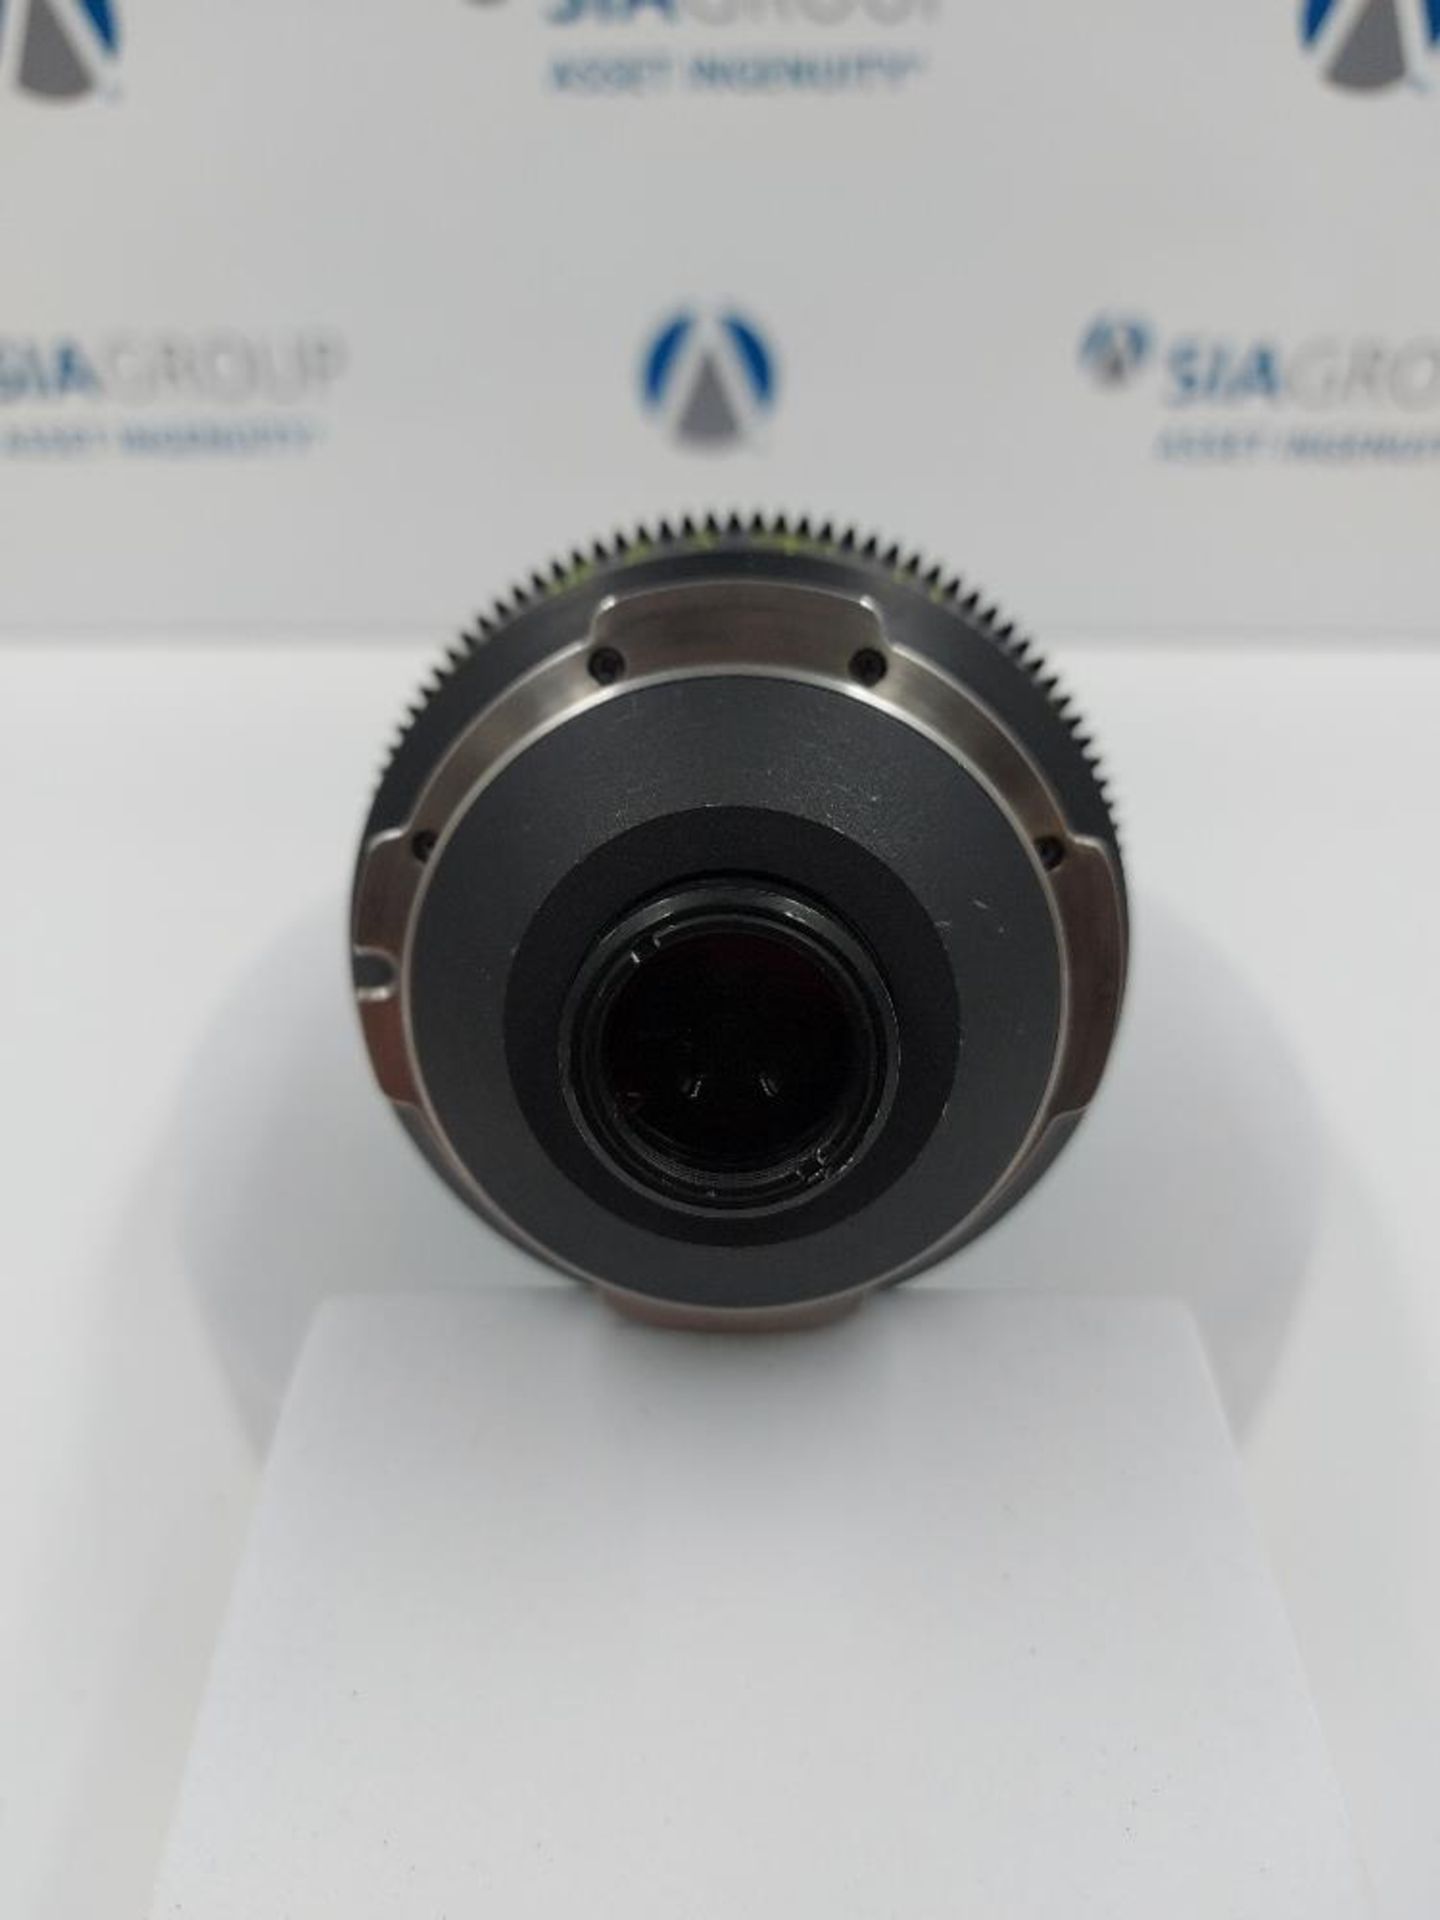 Optex Super 16 5.5mm T2 PL Mount Cinema Lens - Image 6 of 8